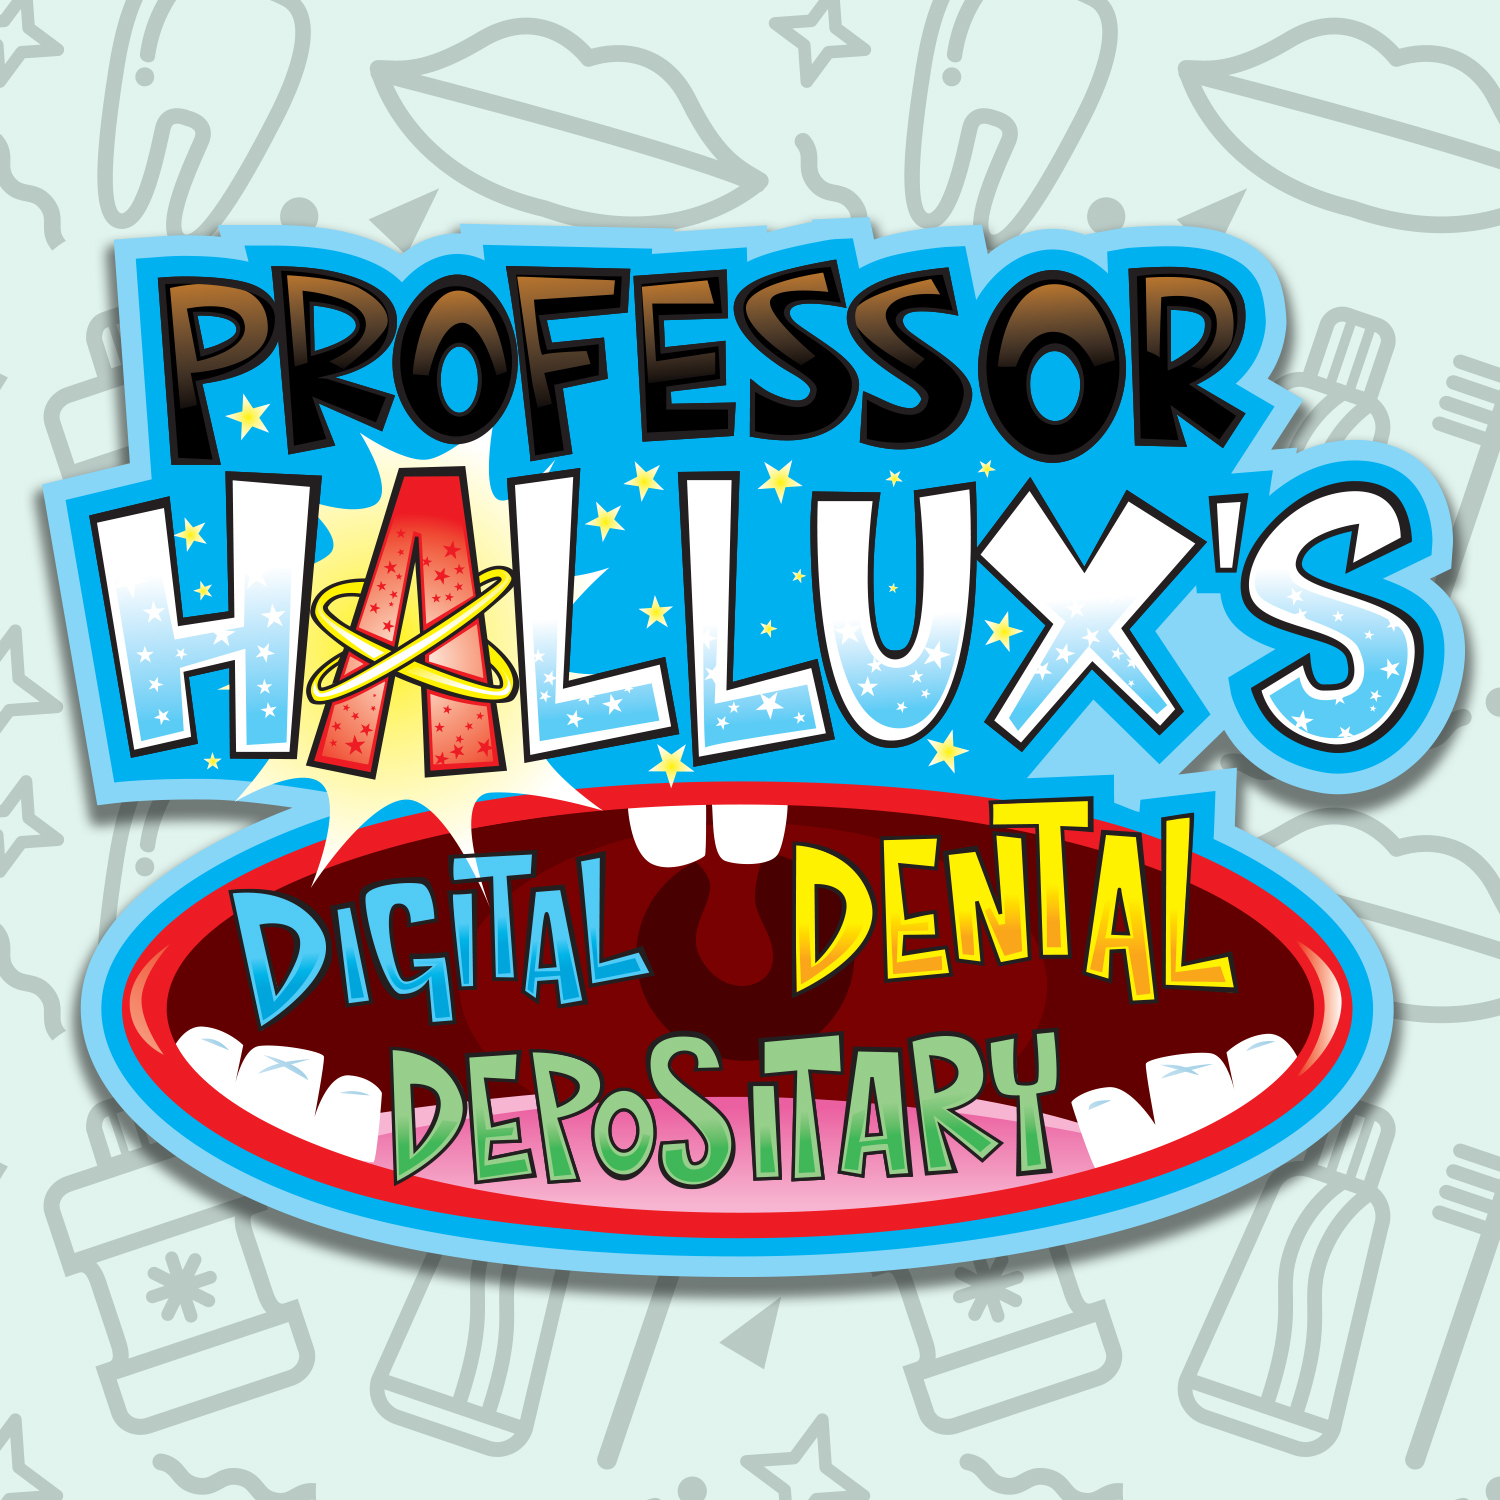 History of dentistry (Digital Dental Depositary)